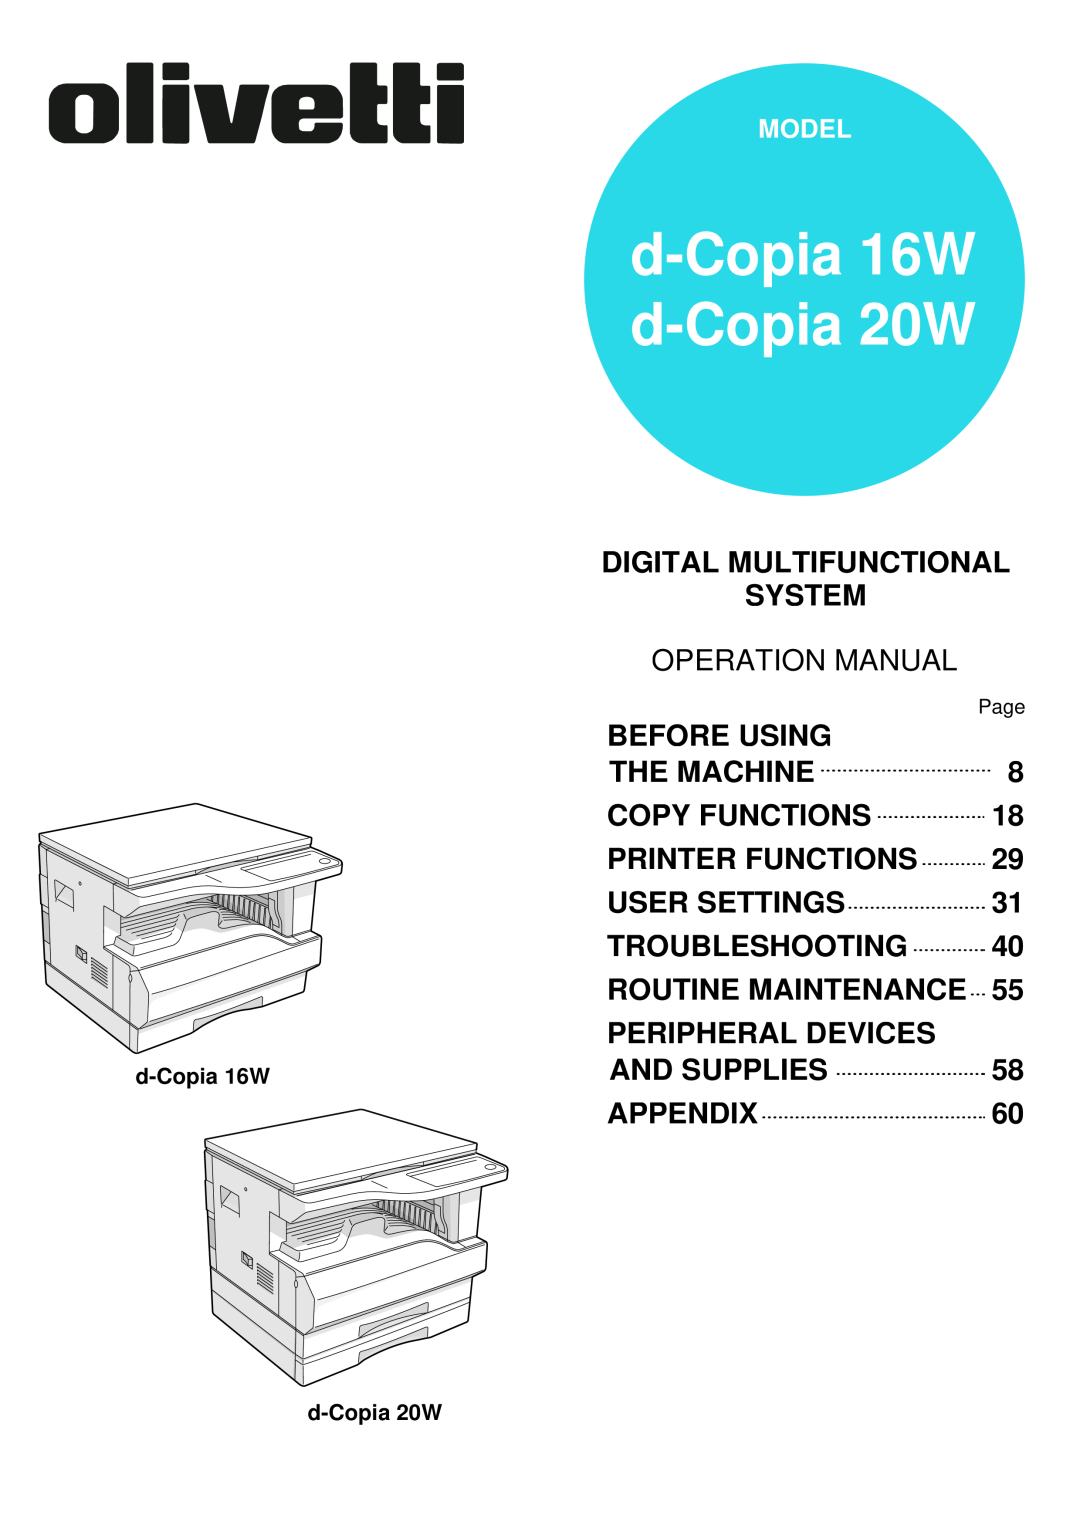 Olivetti operation manual d-Copia 16W d-Copia 20W 